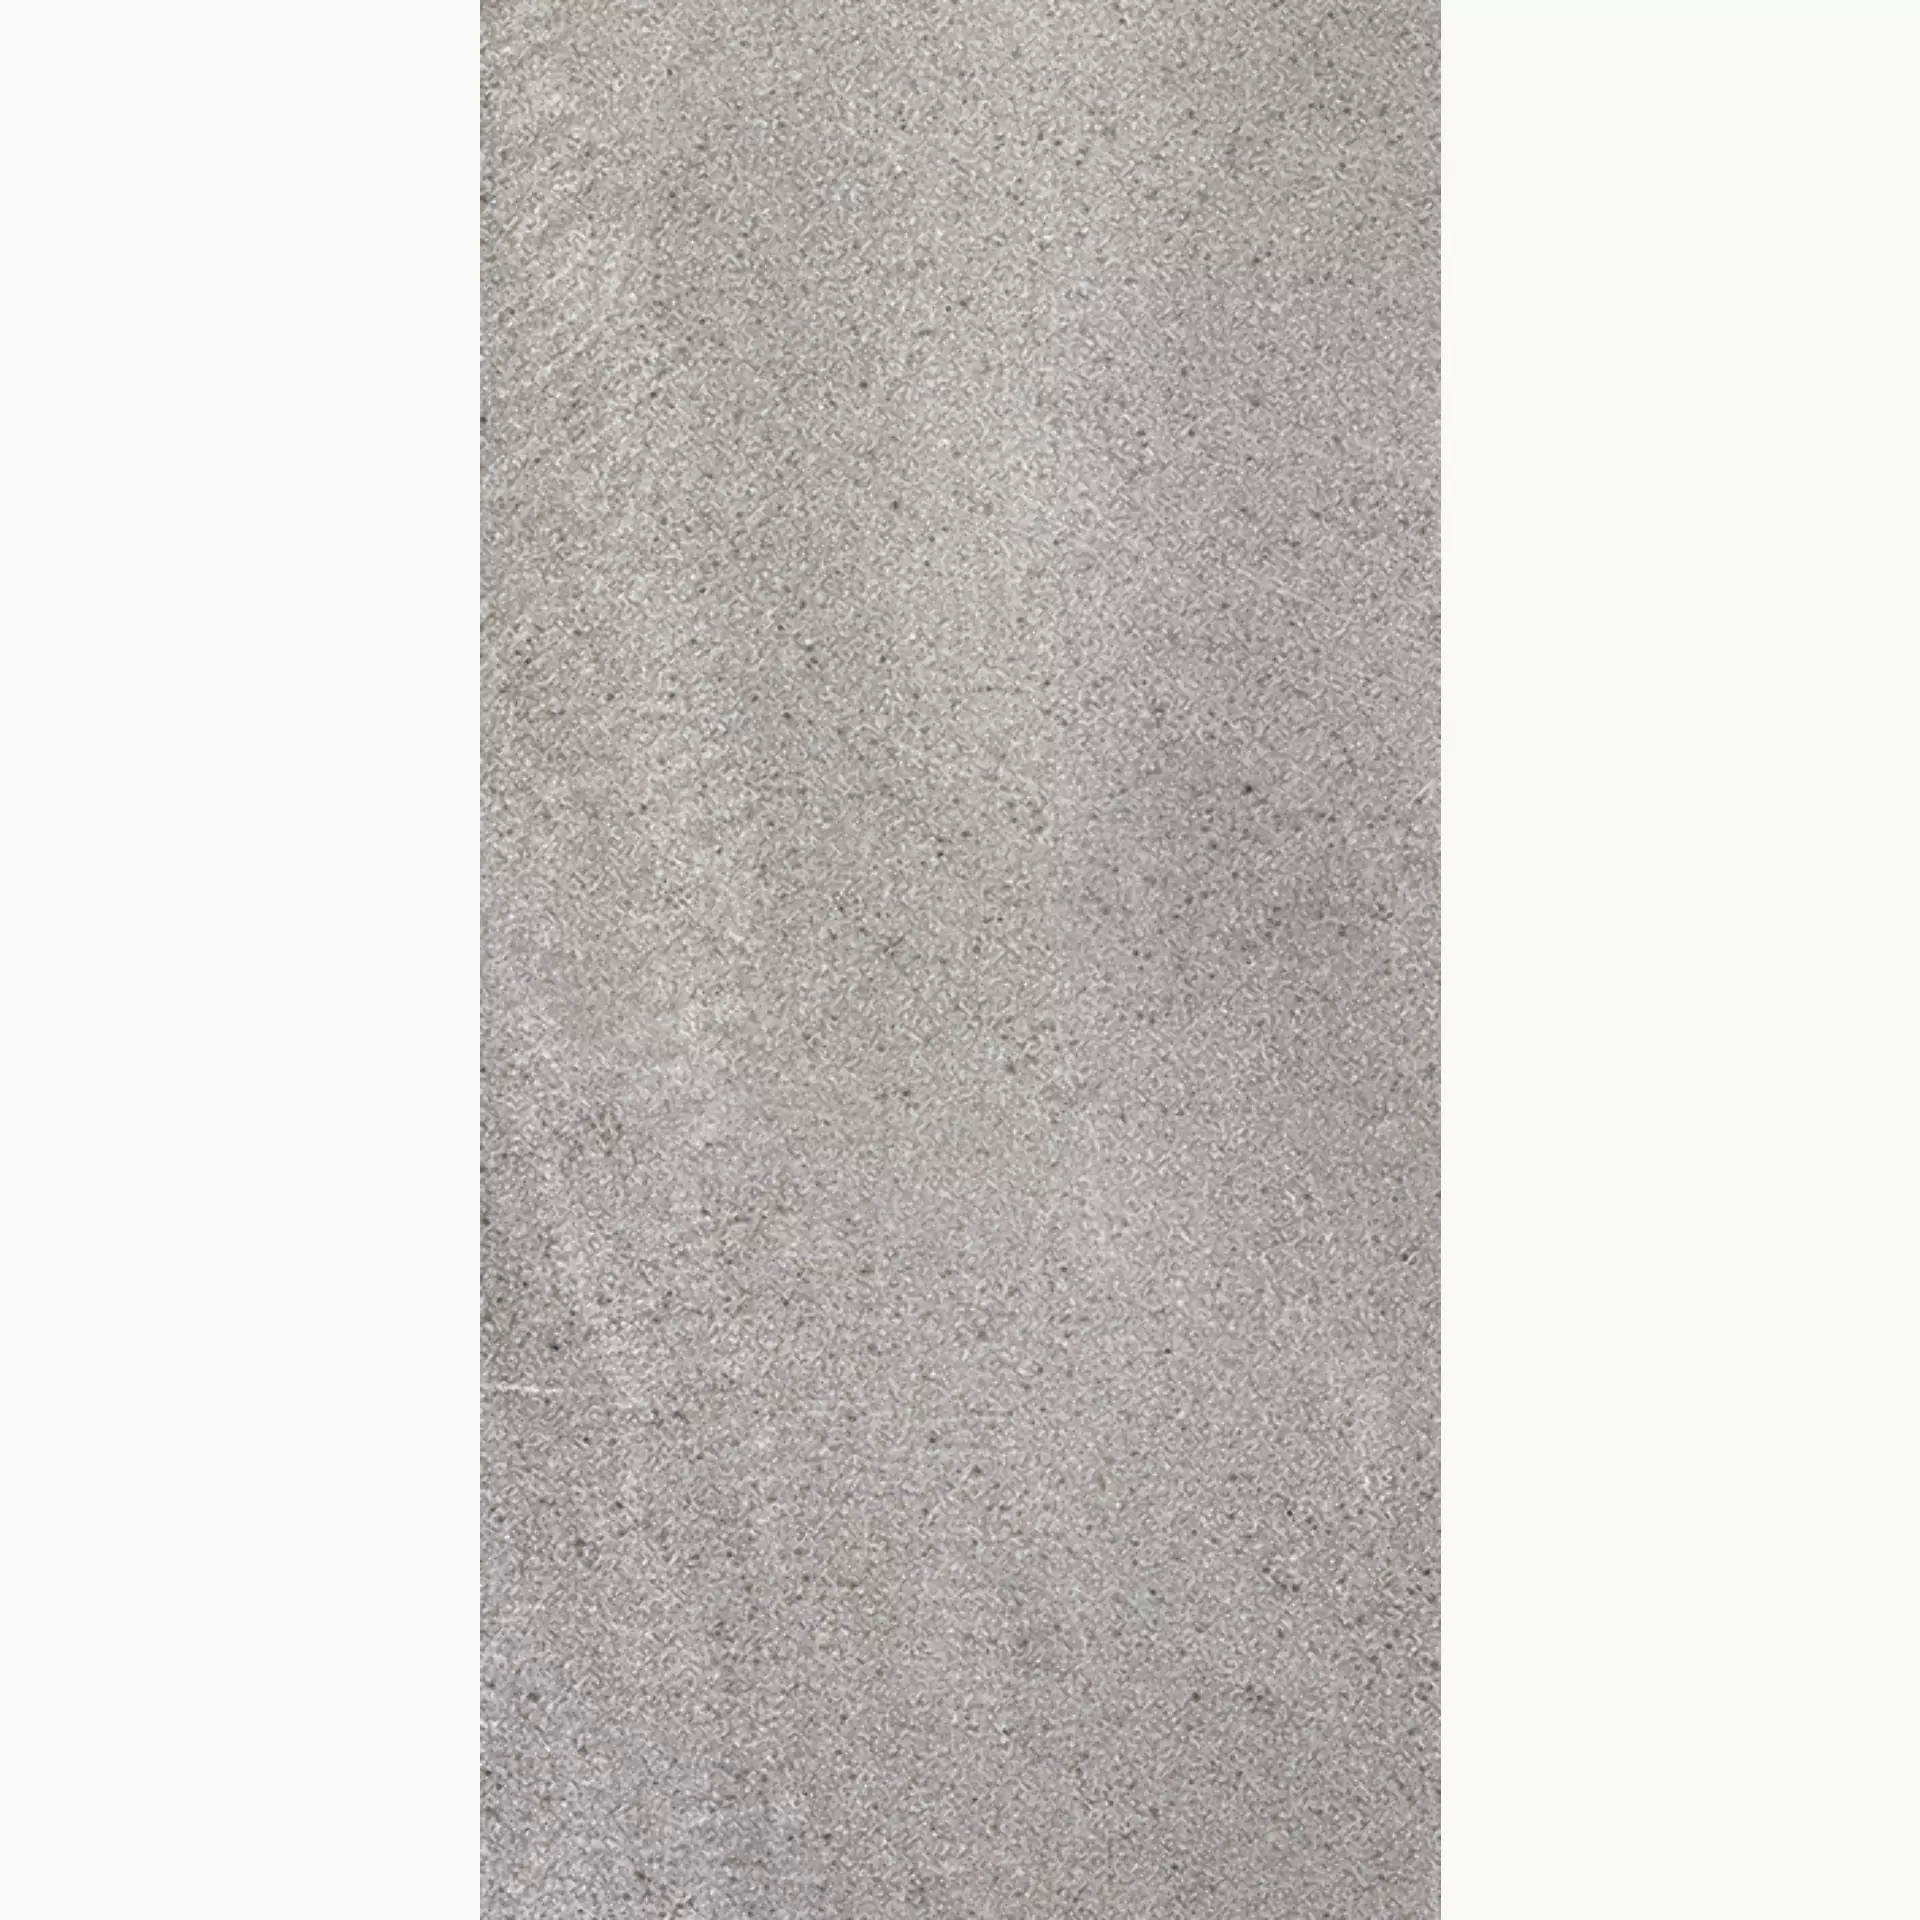 Wandfliese,Bodenfliese Villeroy & Boch Natural Blend Stone Grey Matt Stone Grey 2680-LY60 matt 30x60cm rektifiziert 10mm